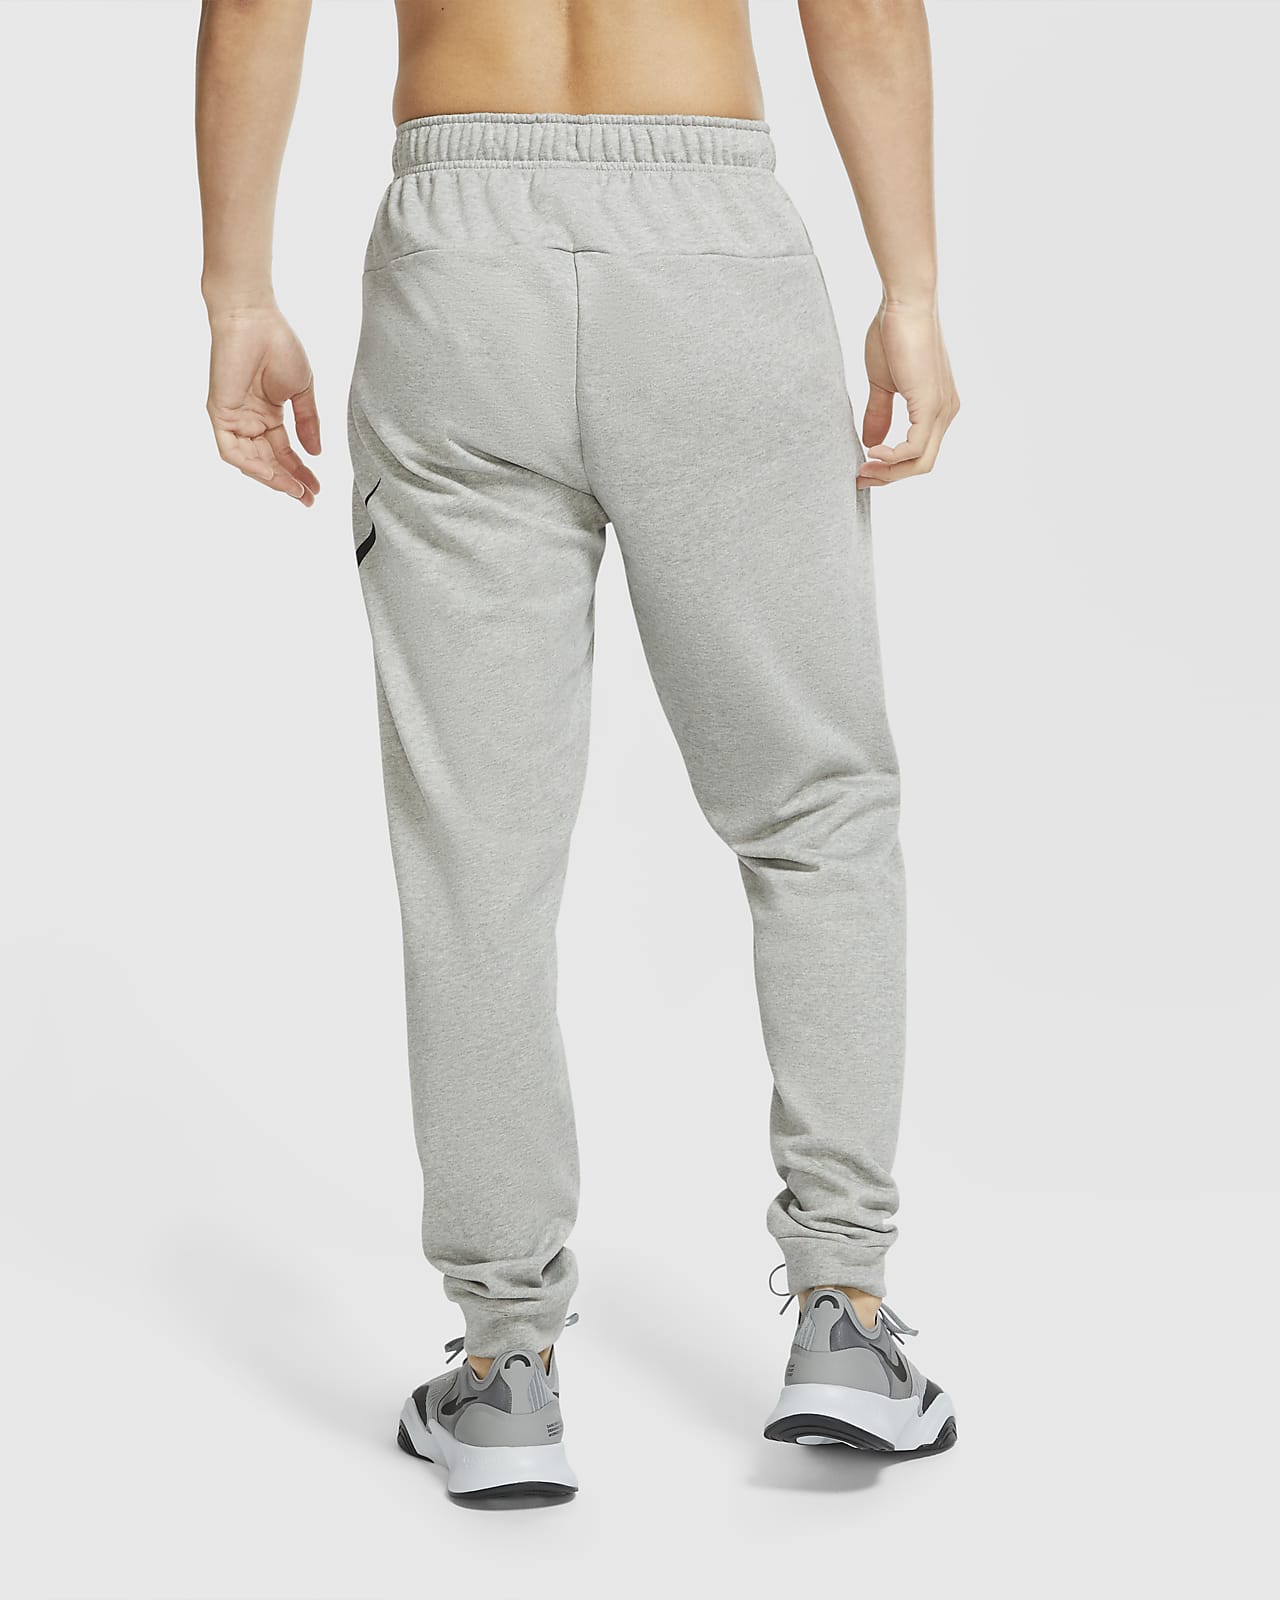 Men's NIKE Dri-FIT Flex Tapered Yoga Pants Size XL Blue DD2120 Joggers NEW  